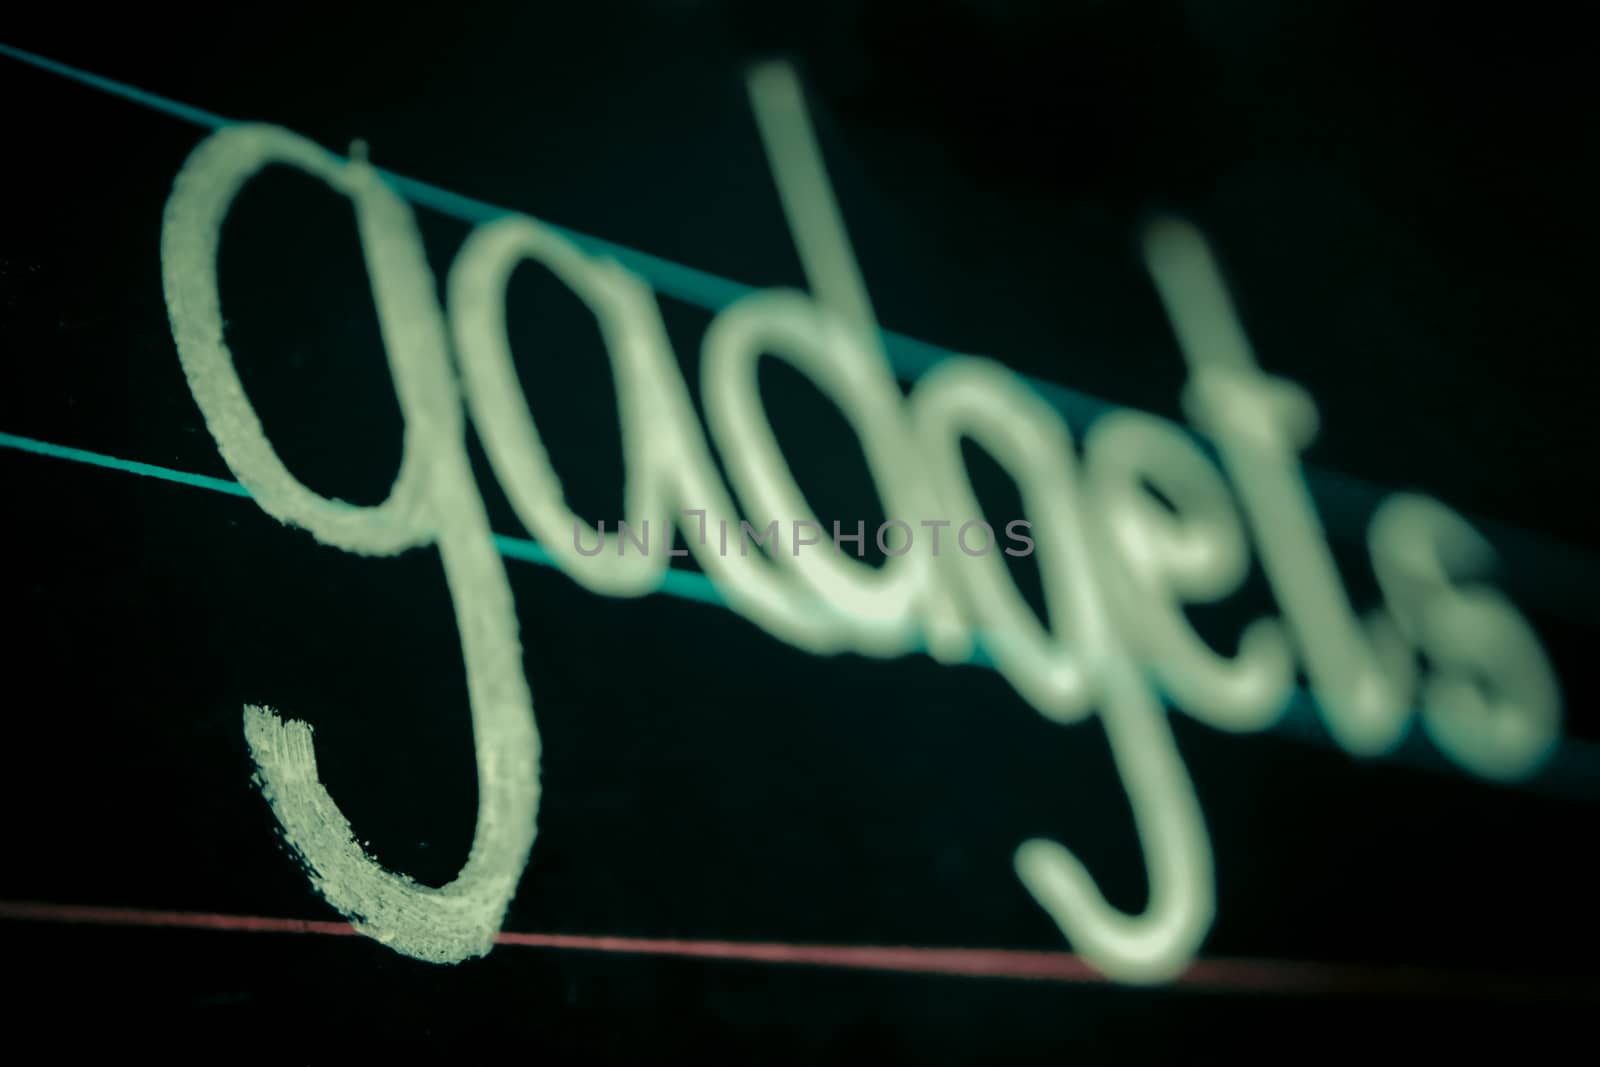 gadgets phrase handwritten on blackboard